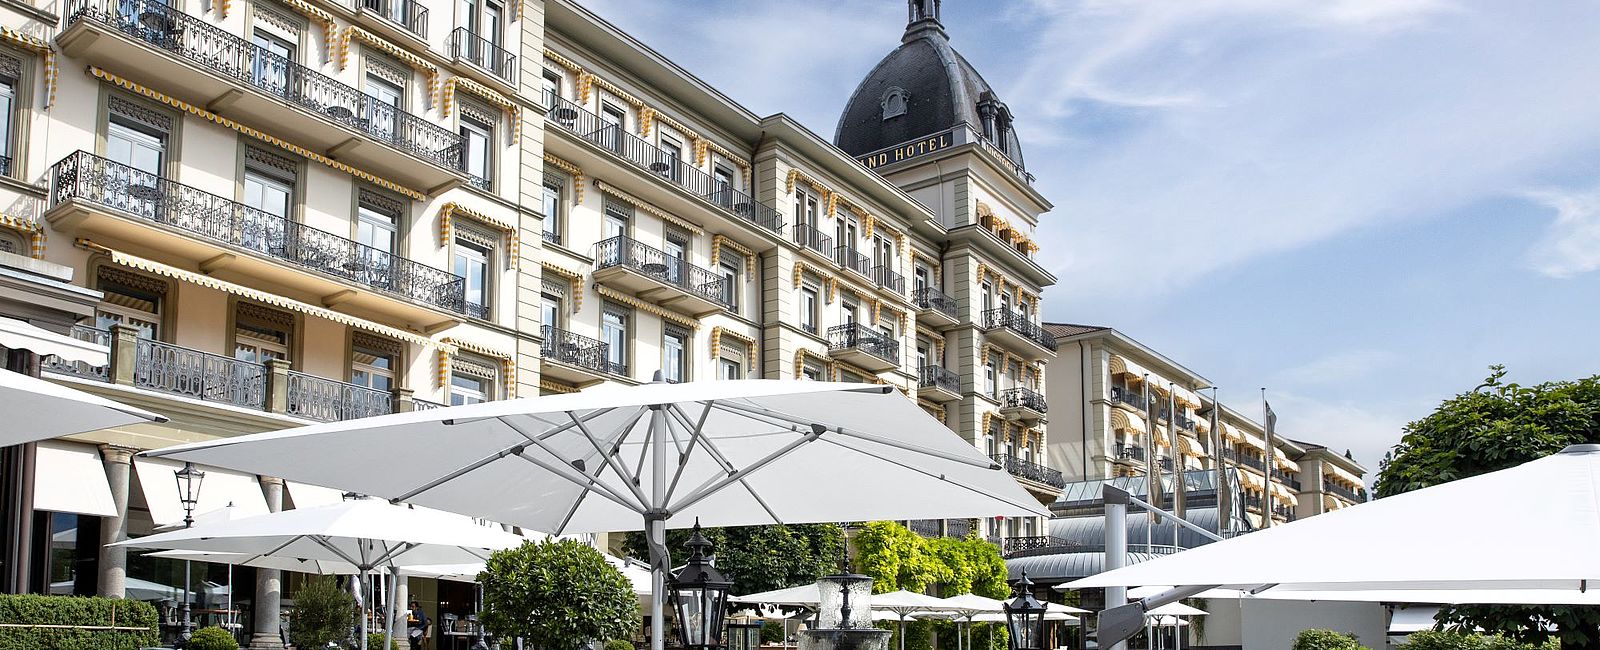 HOTEL TIPPS
 Victoria-Jungfrau Grand Hotel & Spa 
 Exklusivstes Spa der Schweizer Alpen für Wanderfreunde 